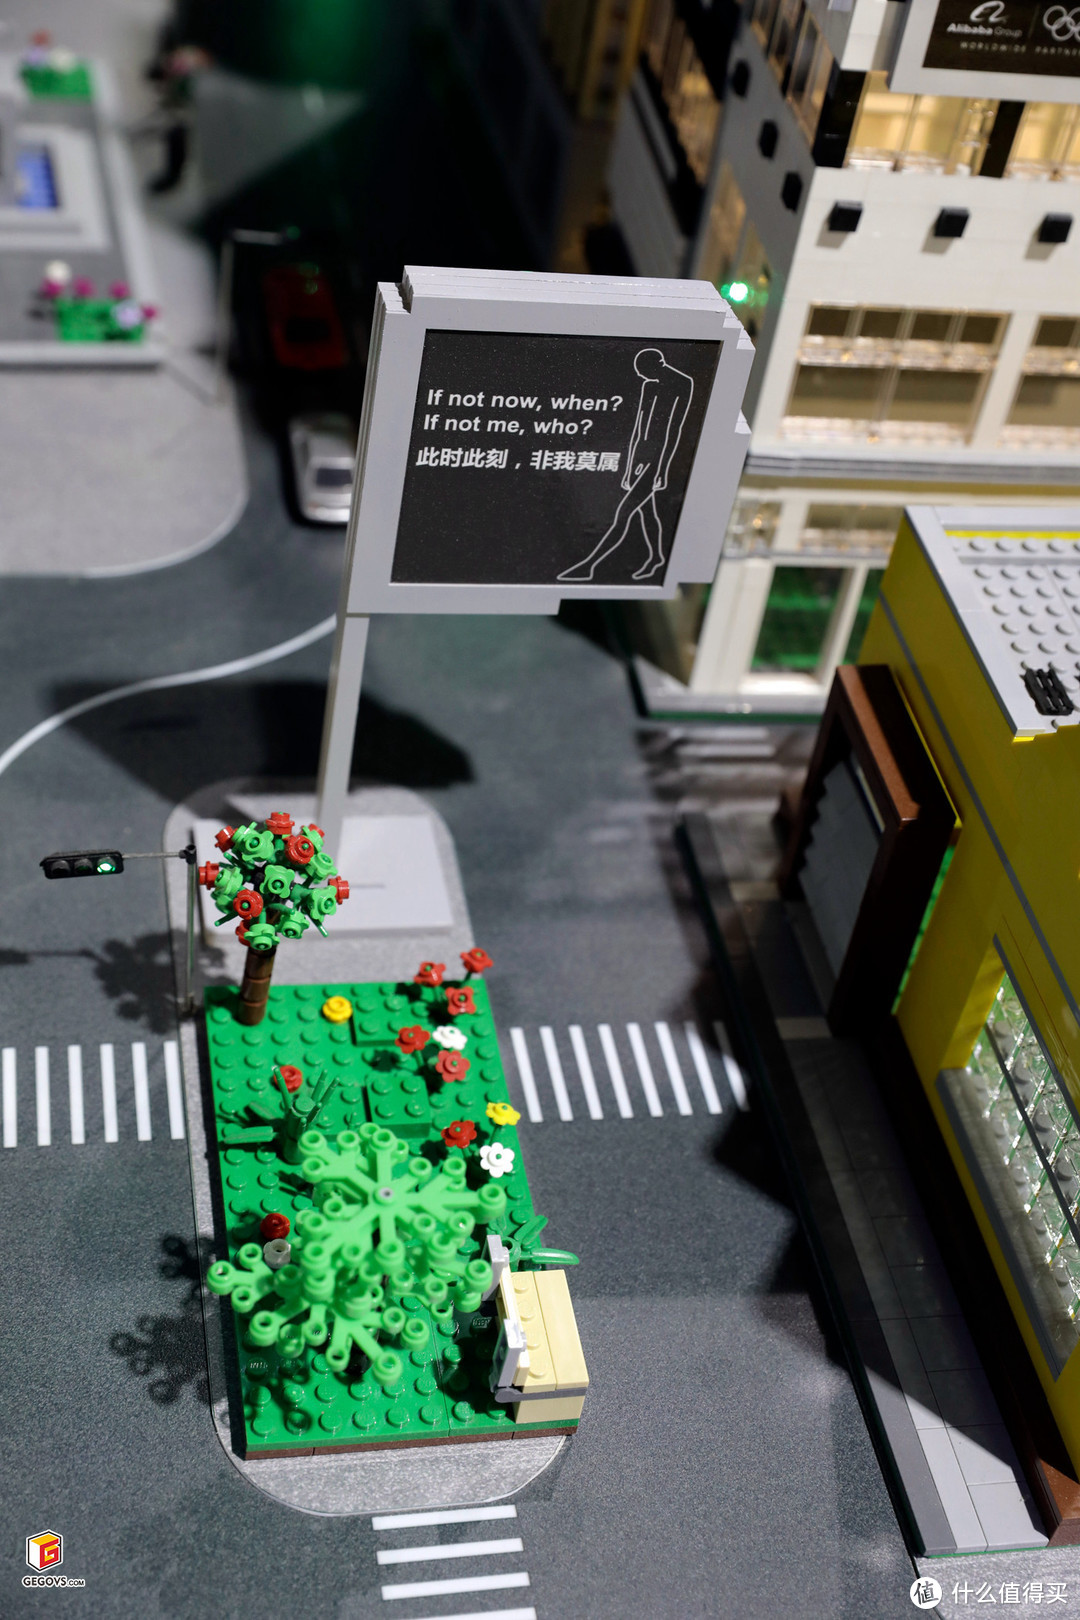 LEGO积木和AR技术的碰撞—阿里云ET智慧大脑乐高+AR演示沙盘